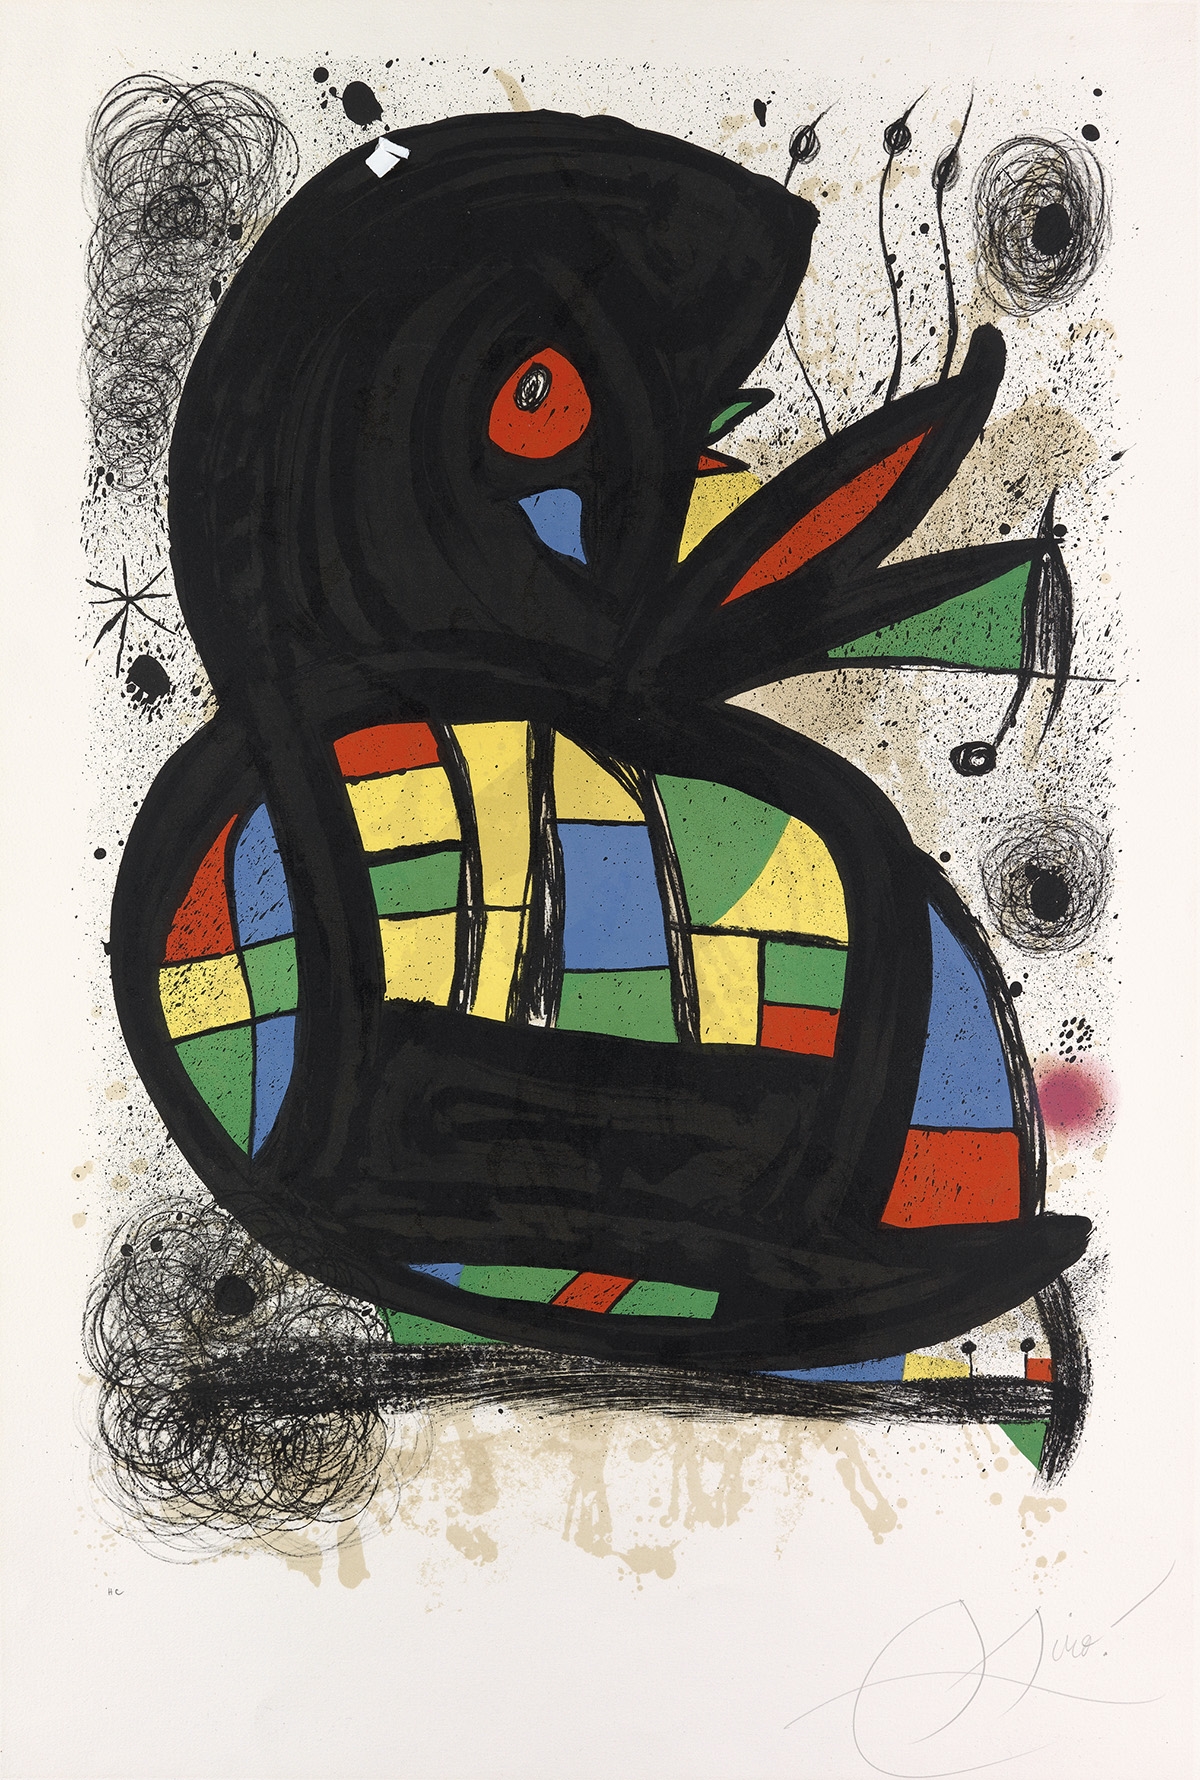 Poster for the Exhibition Miró, Foundation Maeght, Saint-Paul-de-Vence